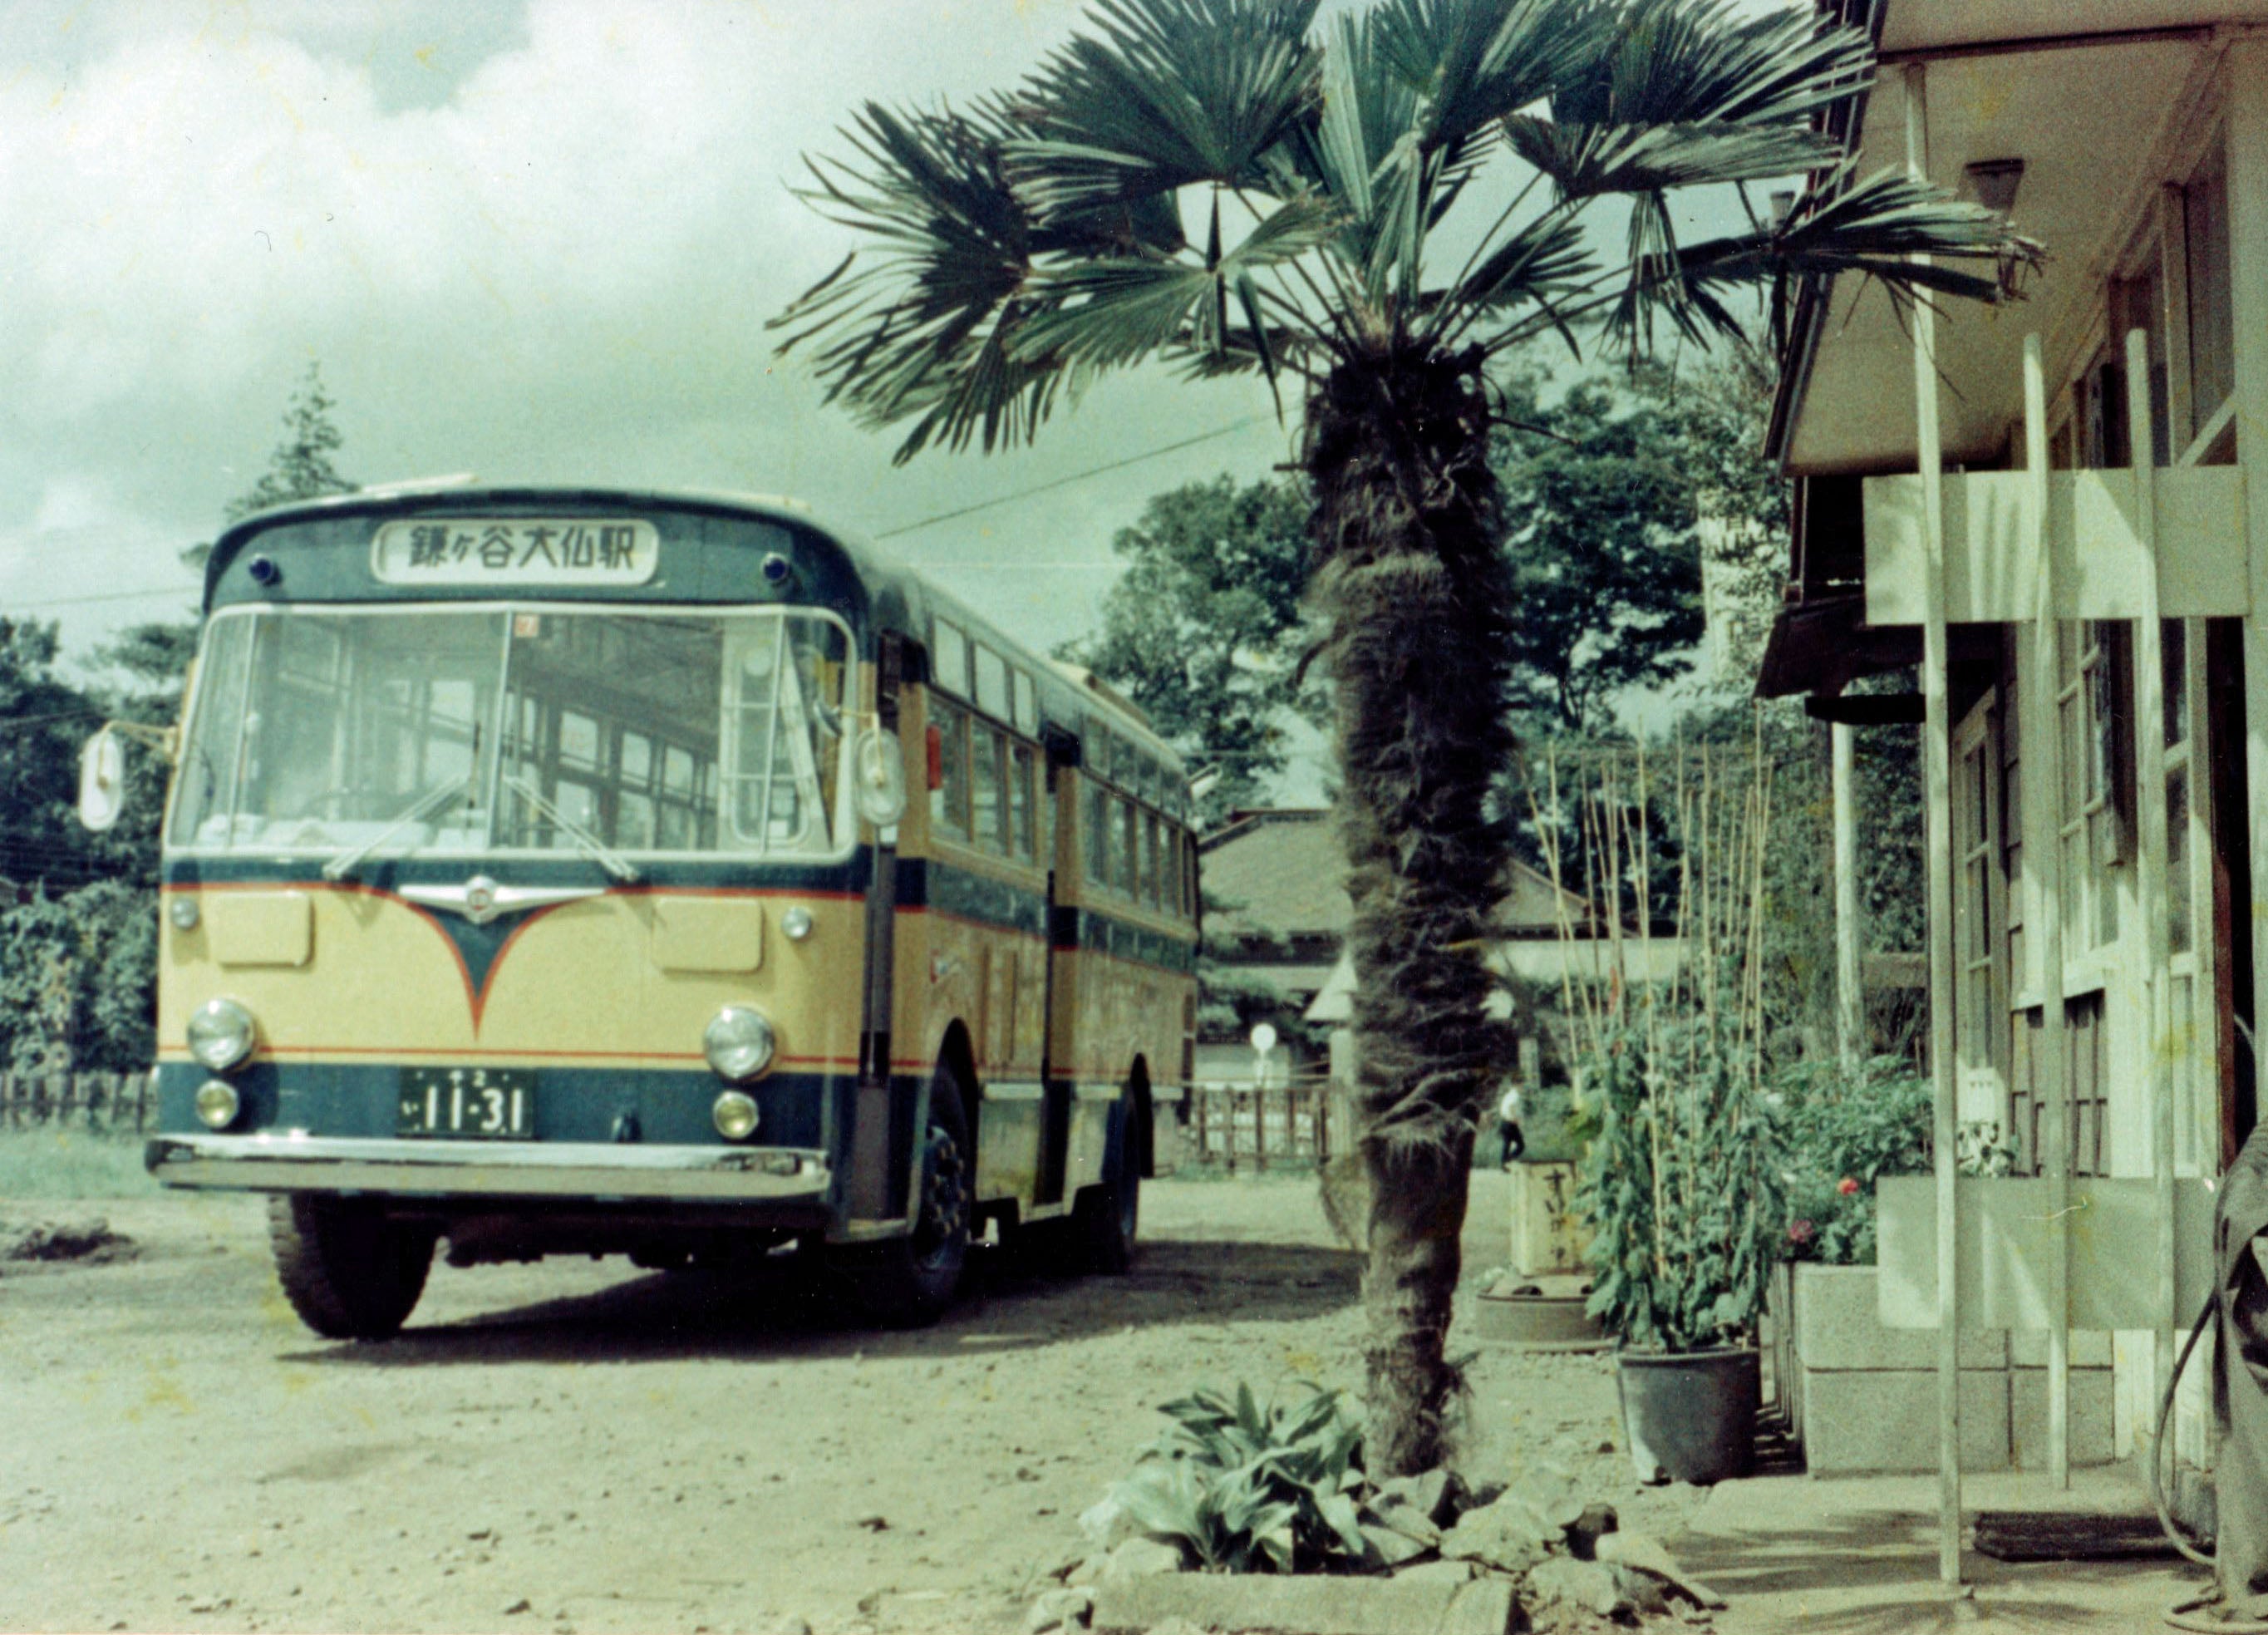  1949年の開業当初から「タクアンバス」の愛称で親しまれていた新京成電鉄バス